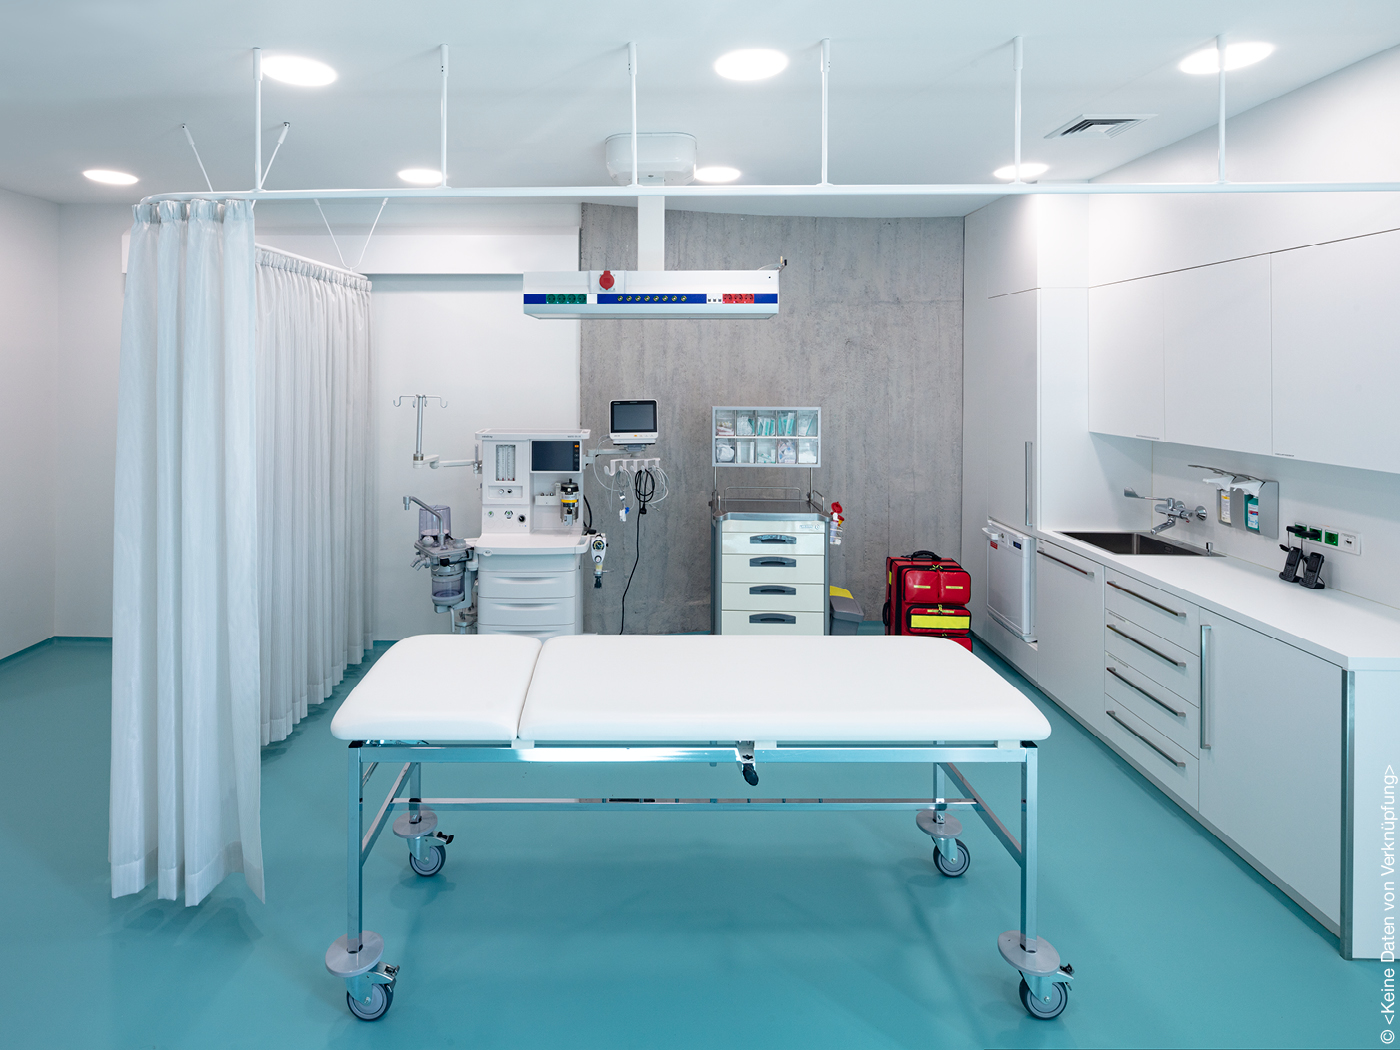 Behandlungsraum in Klinik mit blauem Fußboden